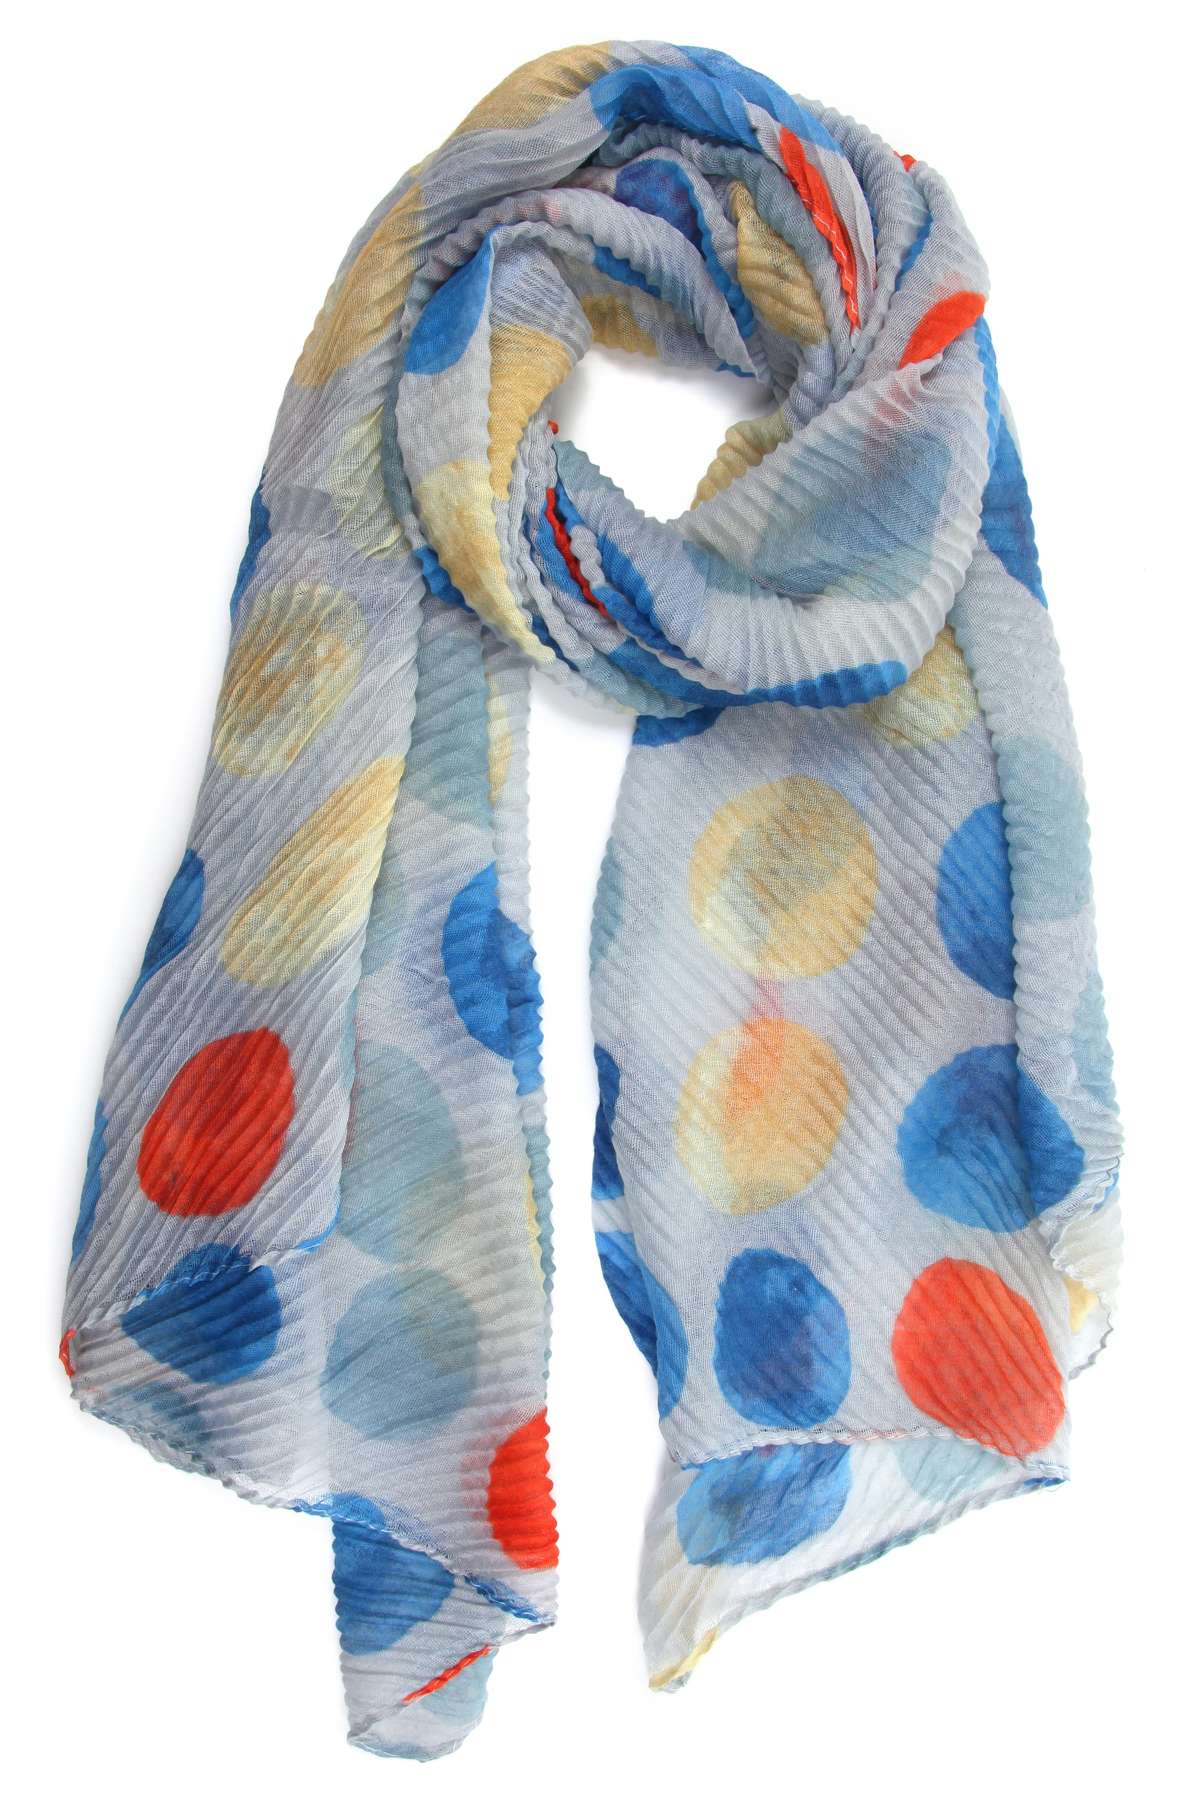 Модный шарф (1 шт.) с разноцветными кружками